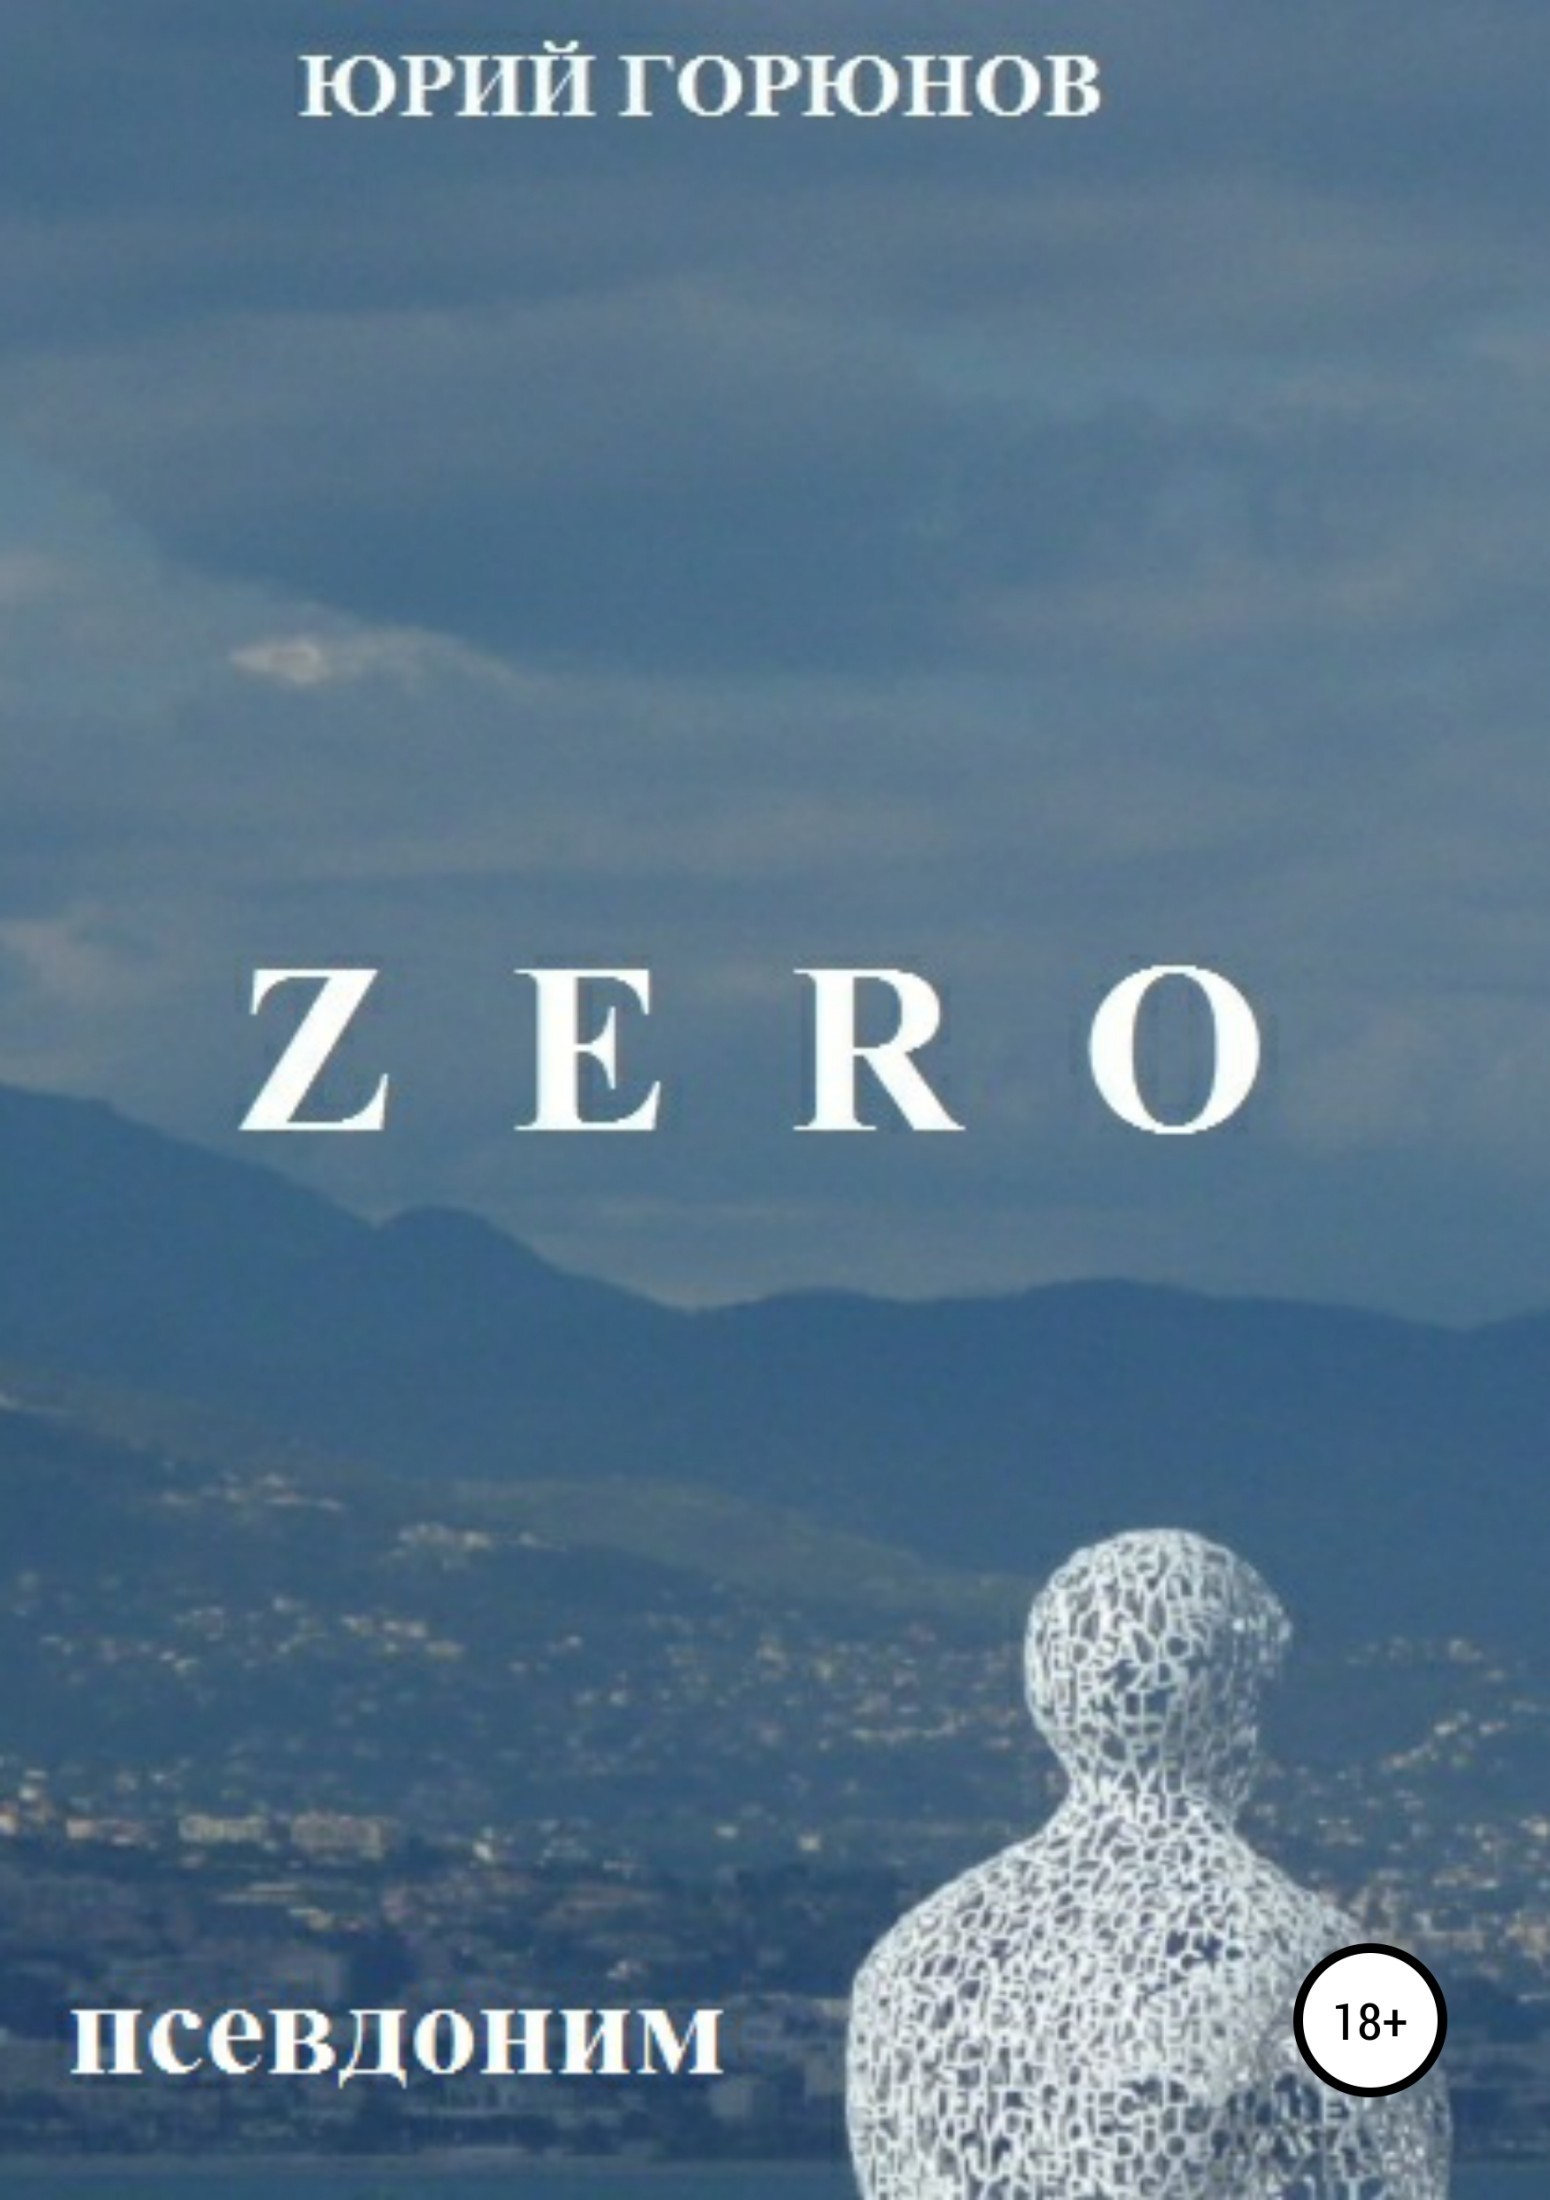 ZERO – псевдоним